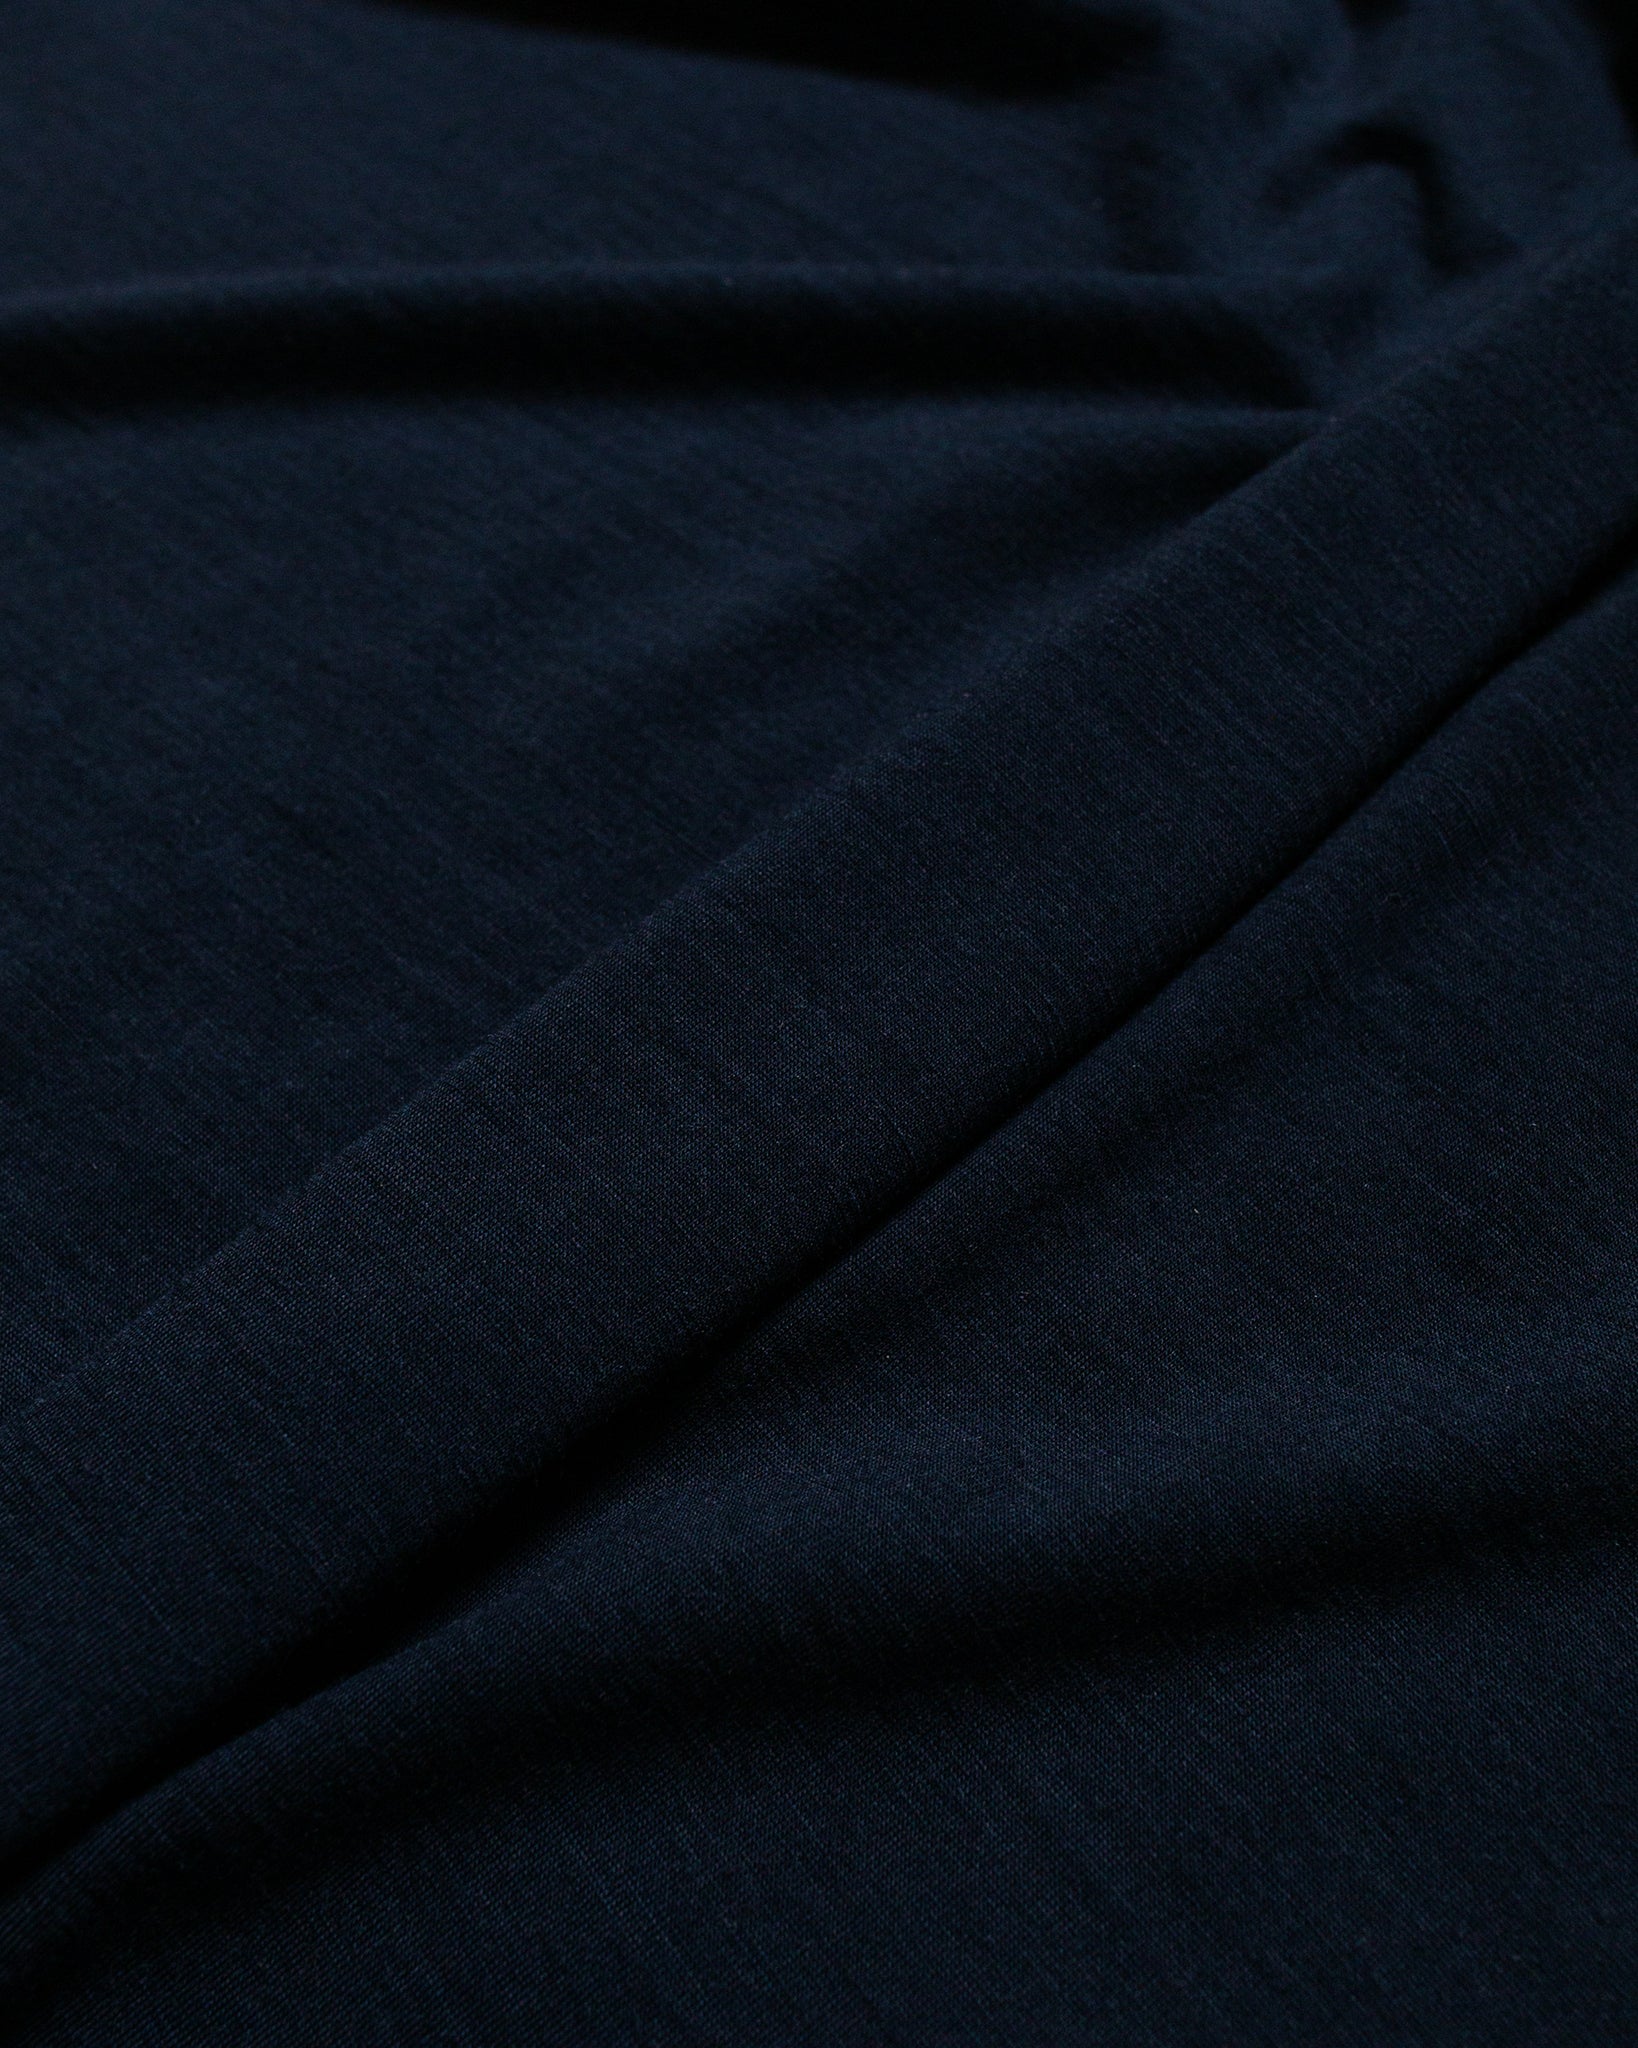 HNDSM A Better T-Shirt Midnight Blue fabric